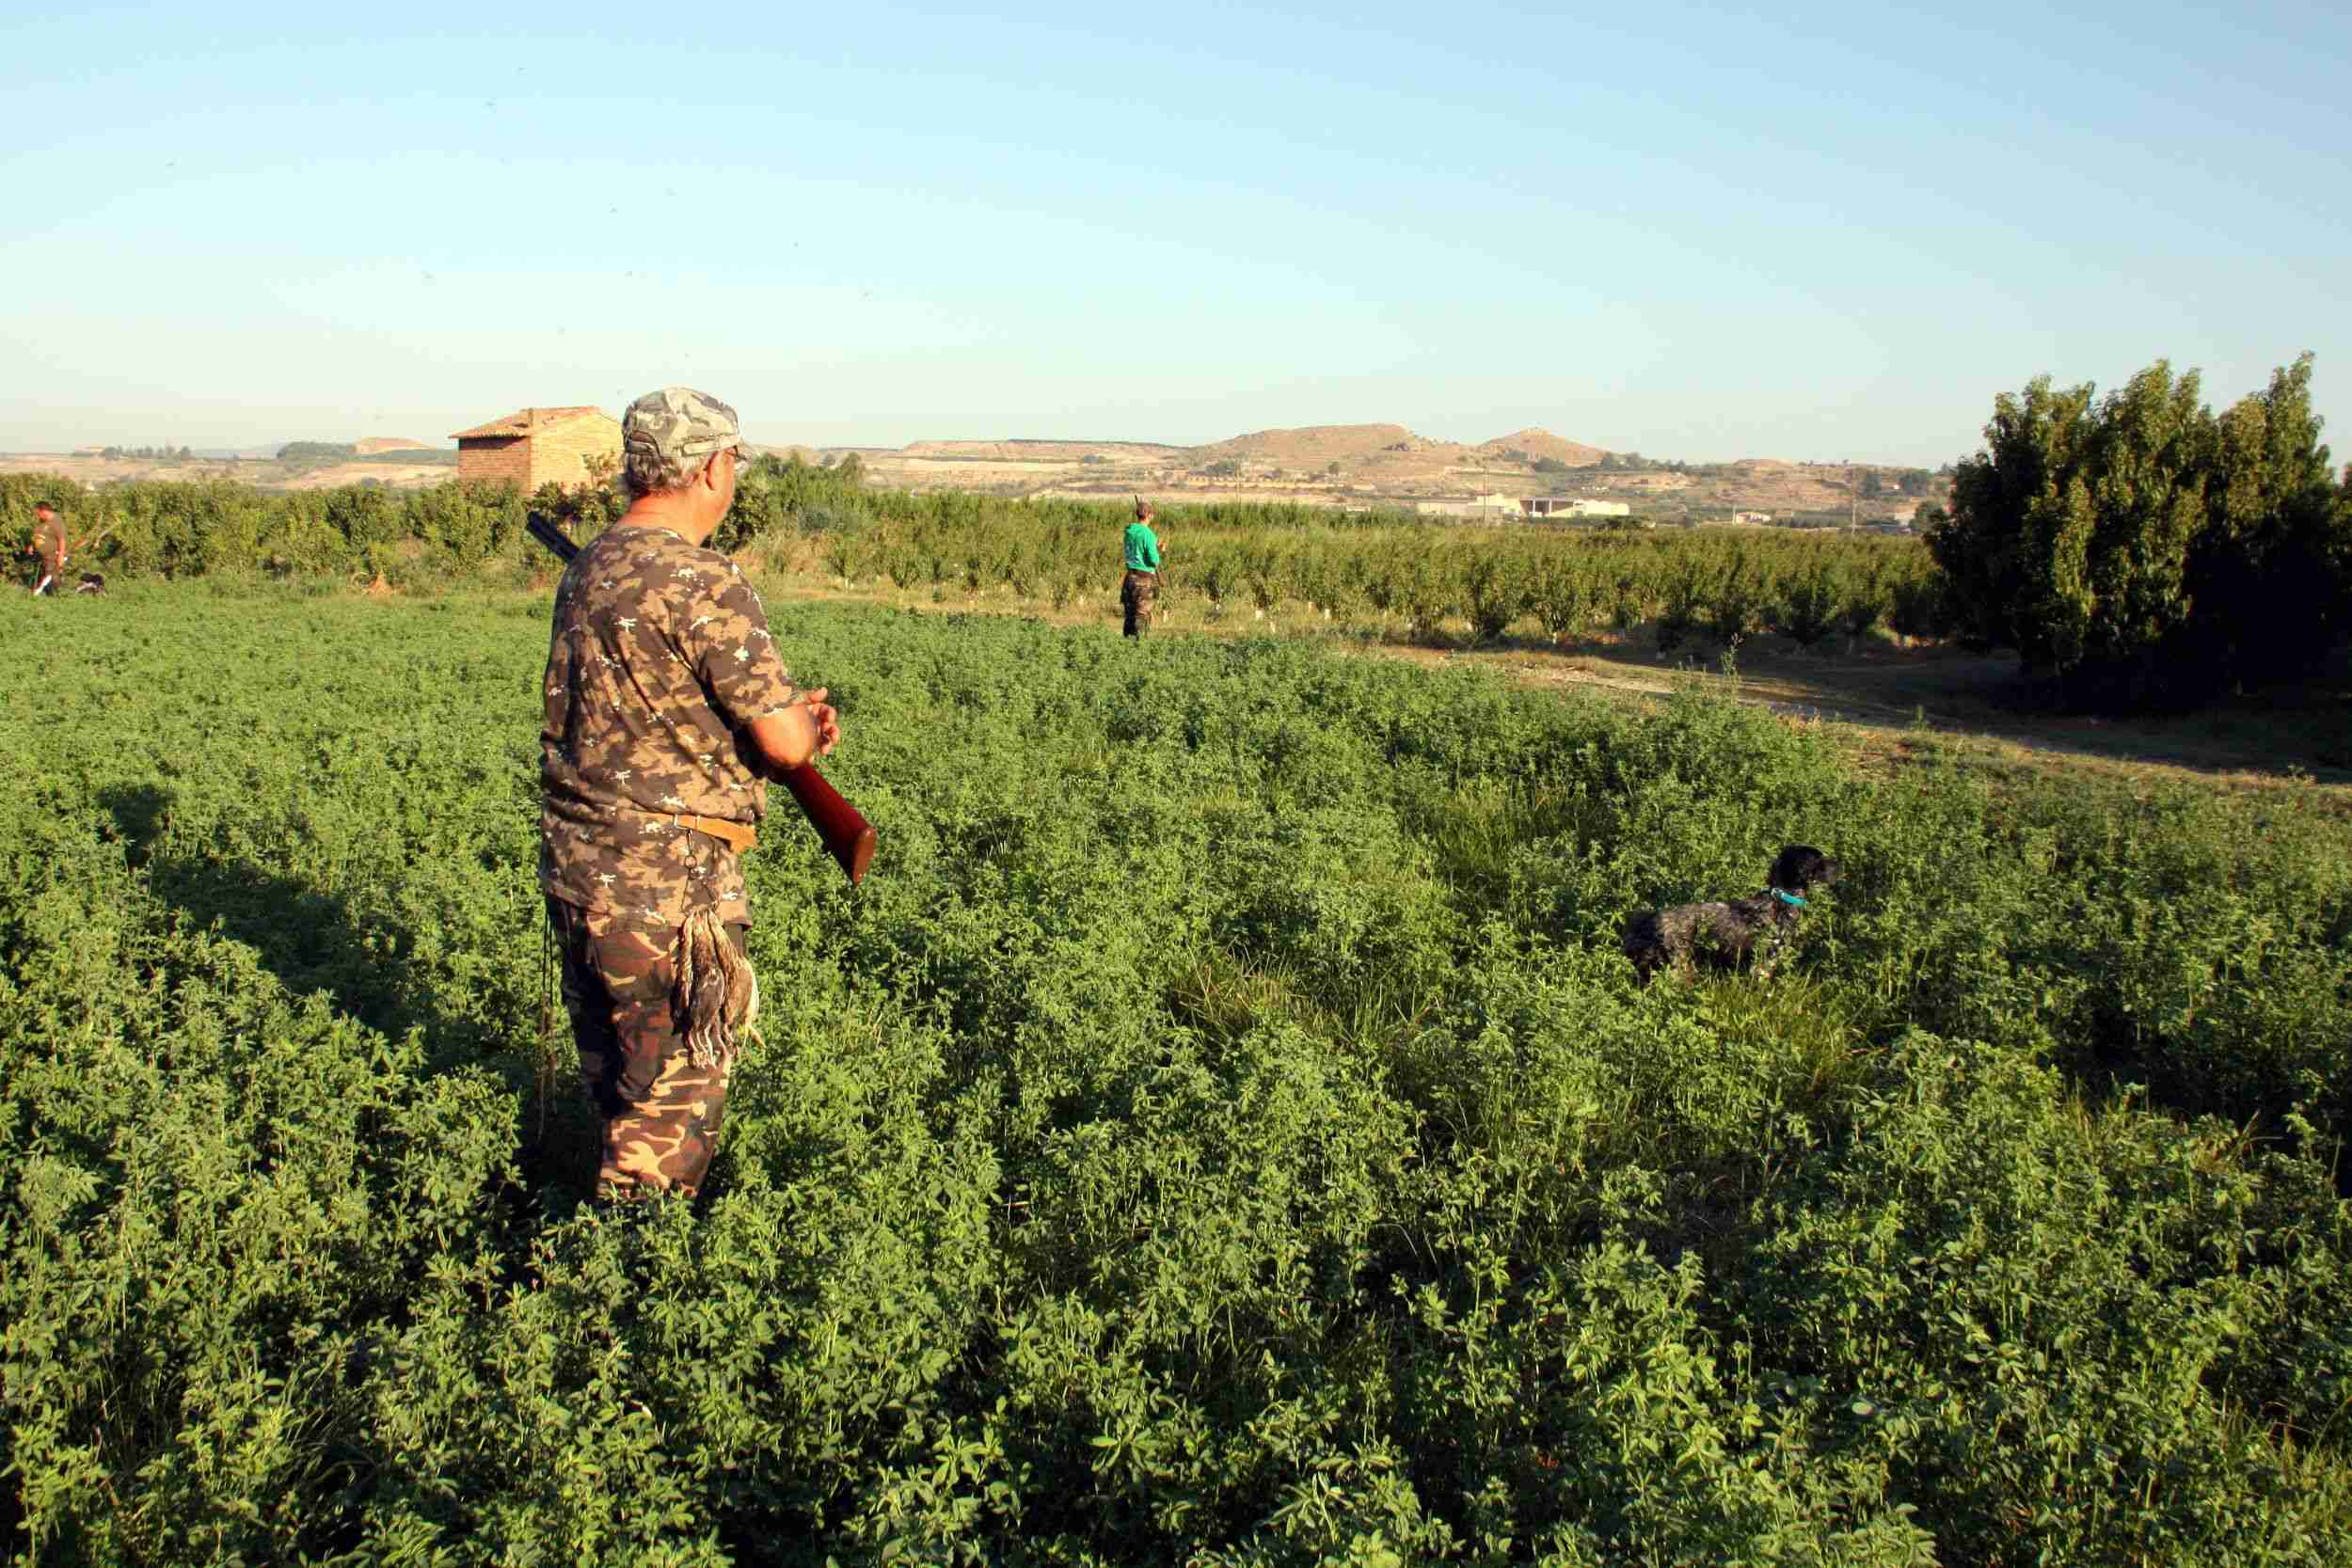 El Govern d'Extremadura promou la caça entre nens de 10 i 12 anys